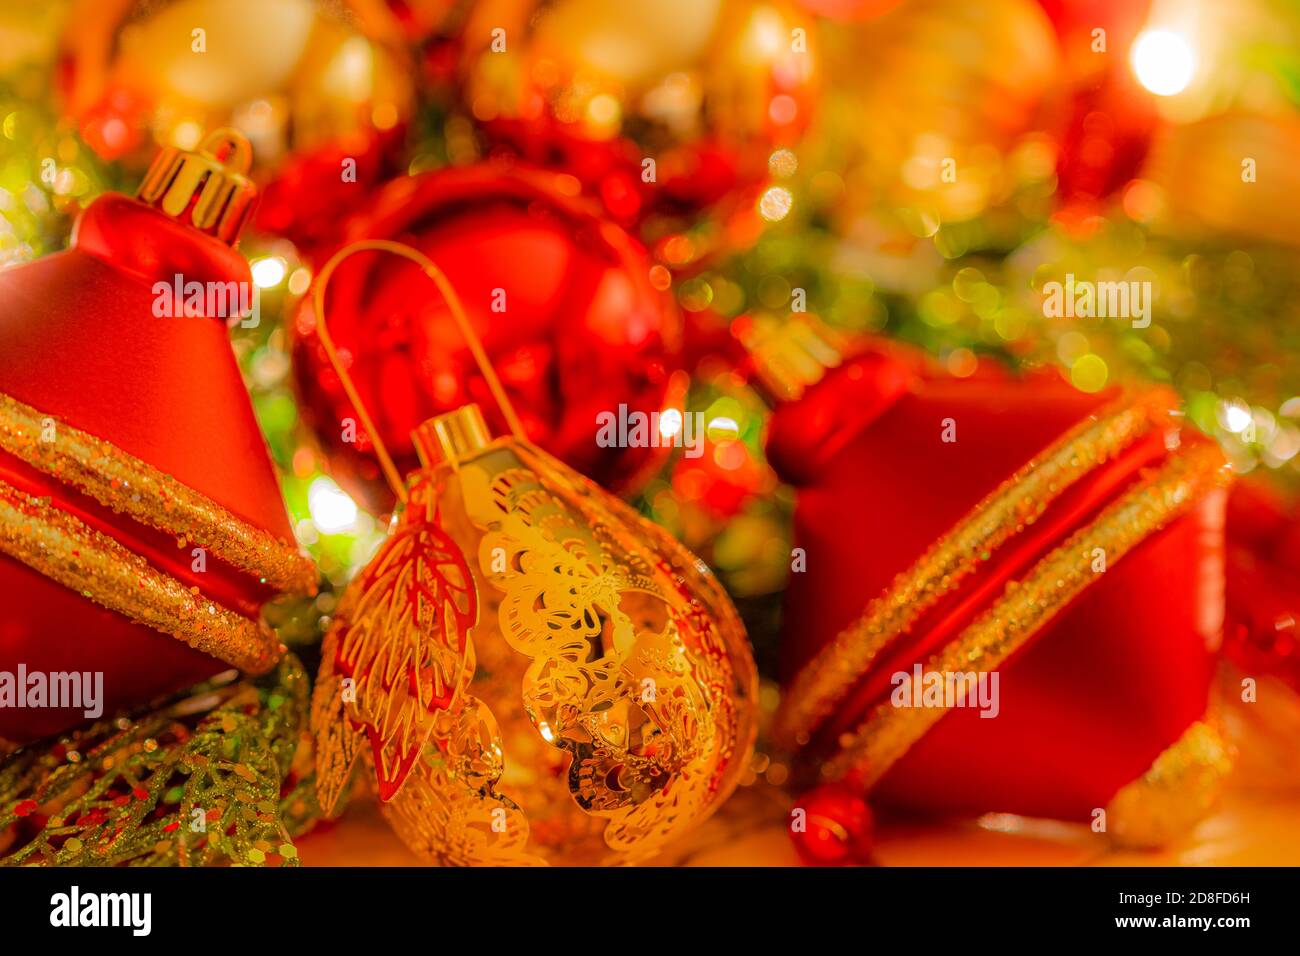 Adorno de Navidad en color dorado es finamente detallado y está rodeado de adornos de enfoque suave en colores brillantes. Foto de stock